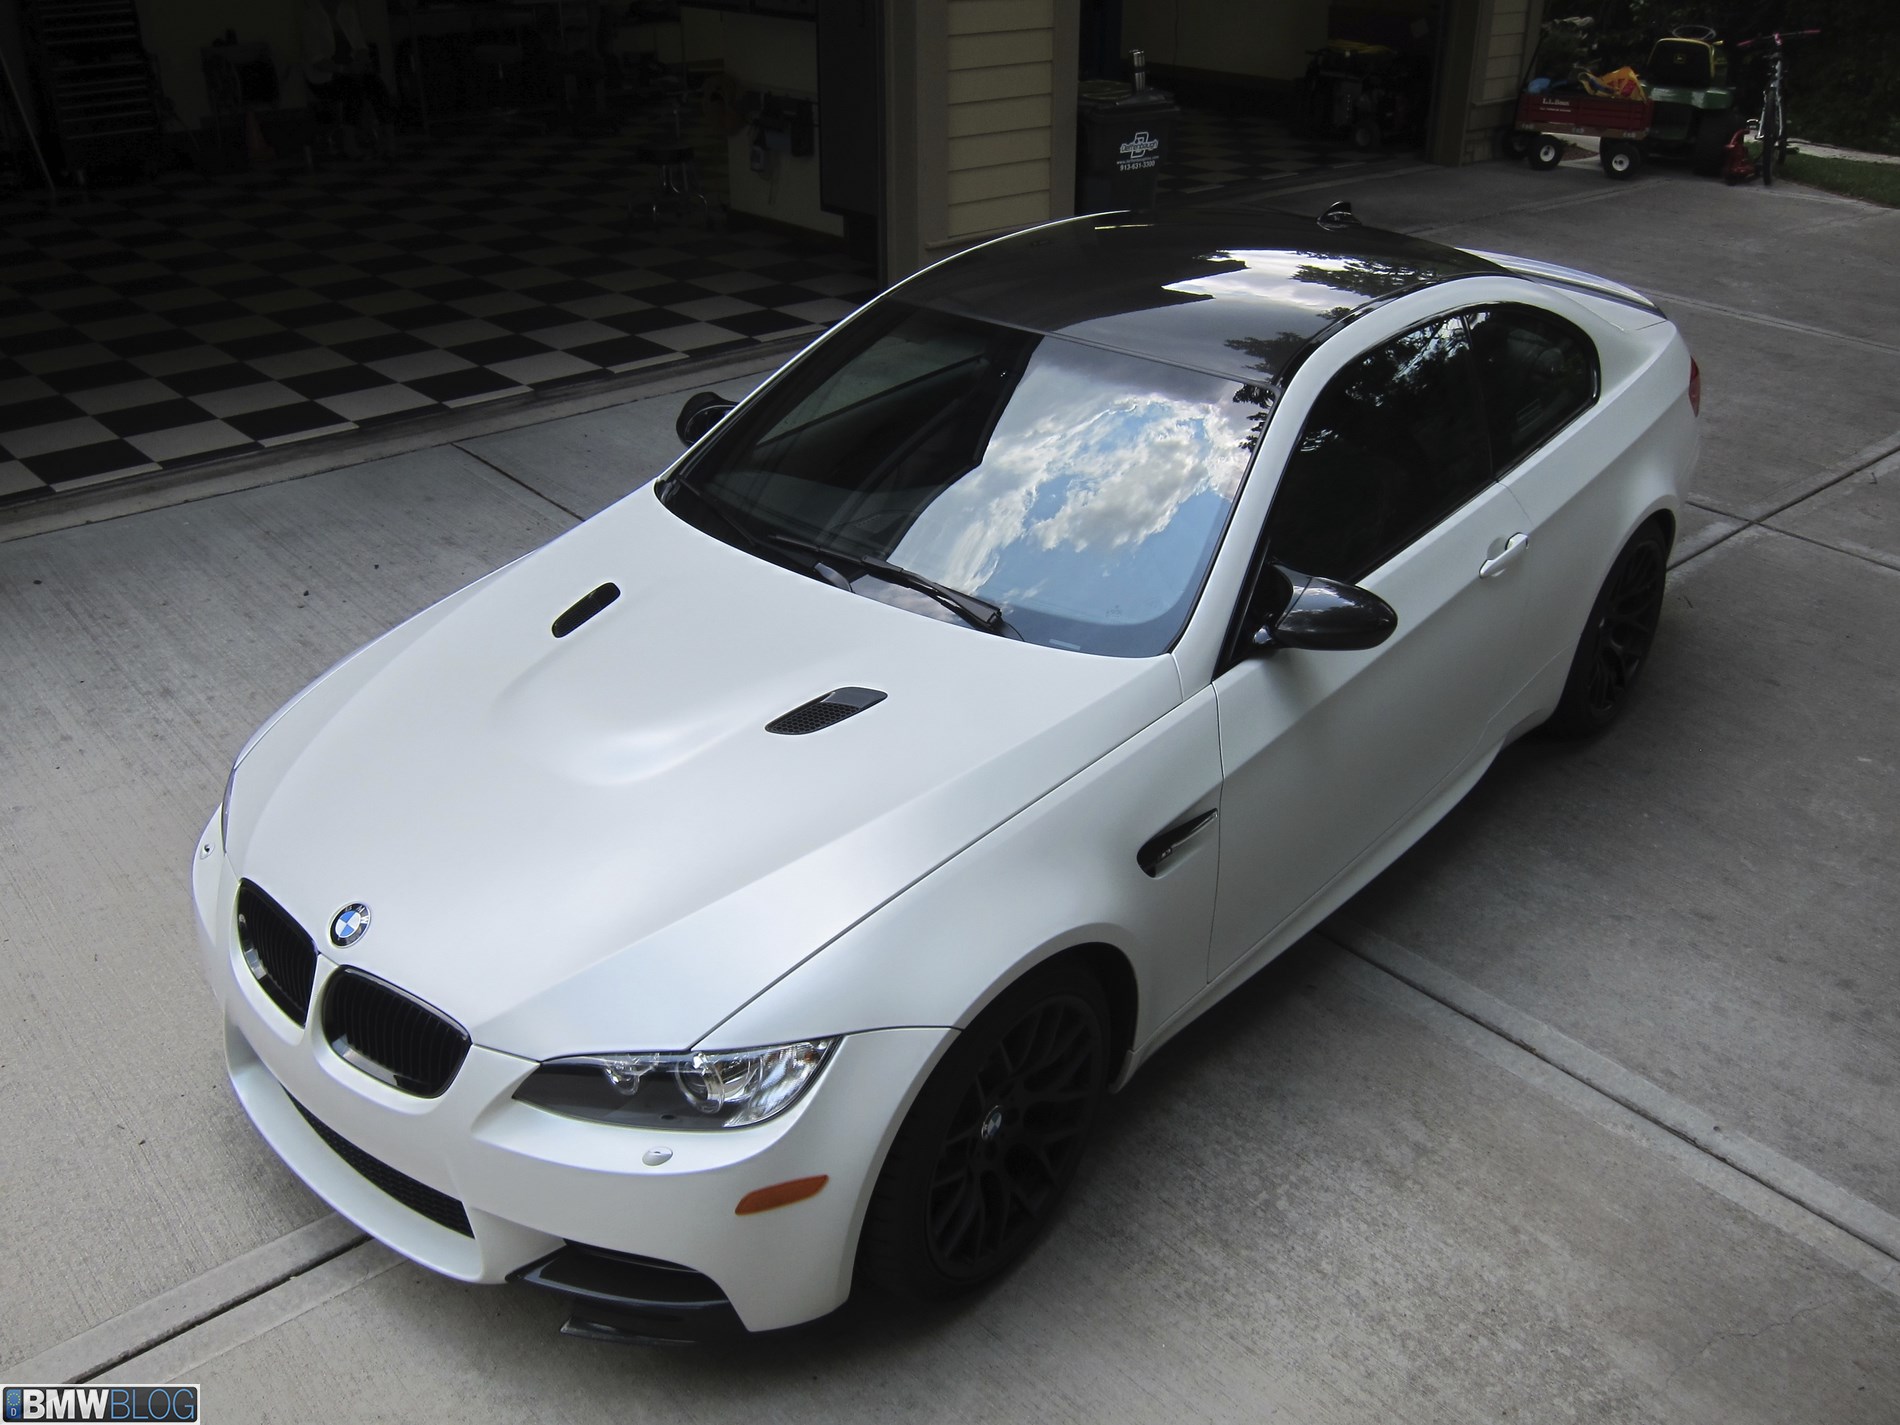 2013 BMW M3 Frozen Edition